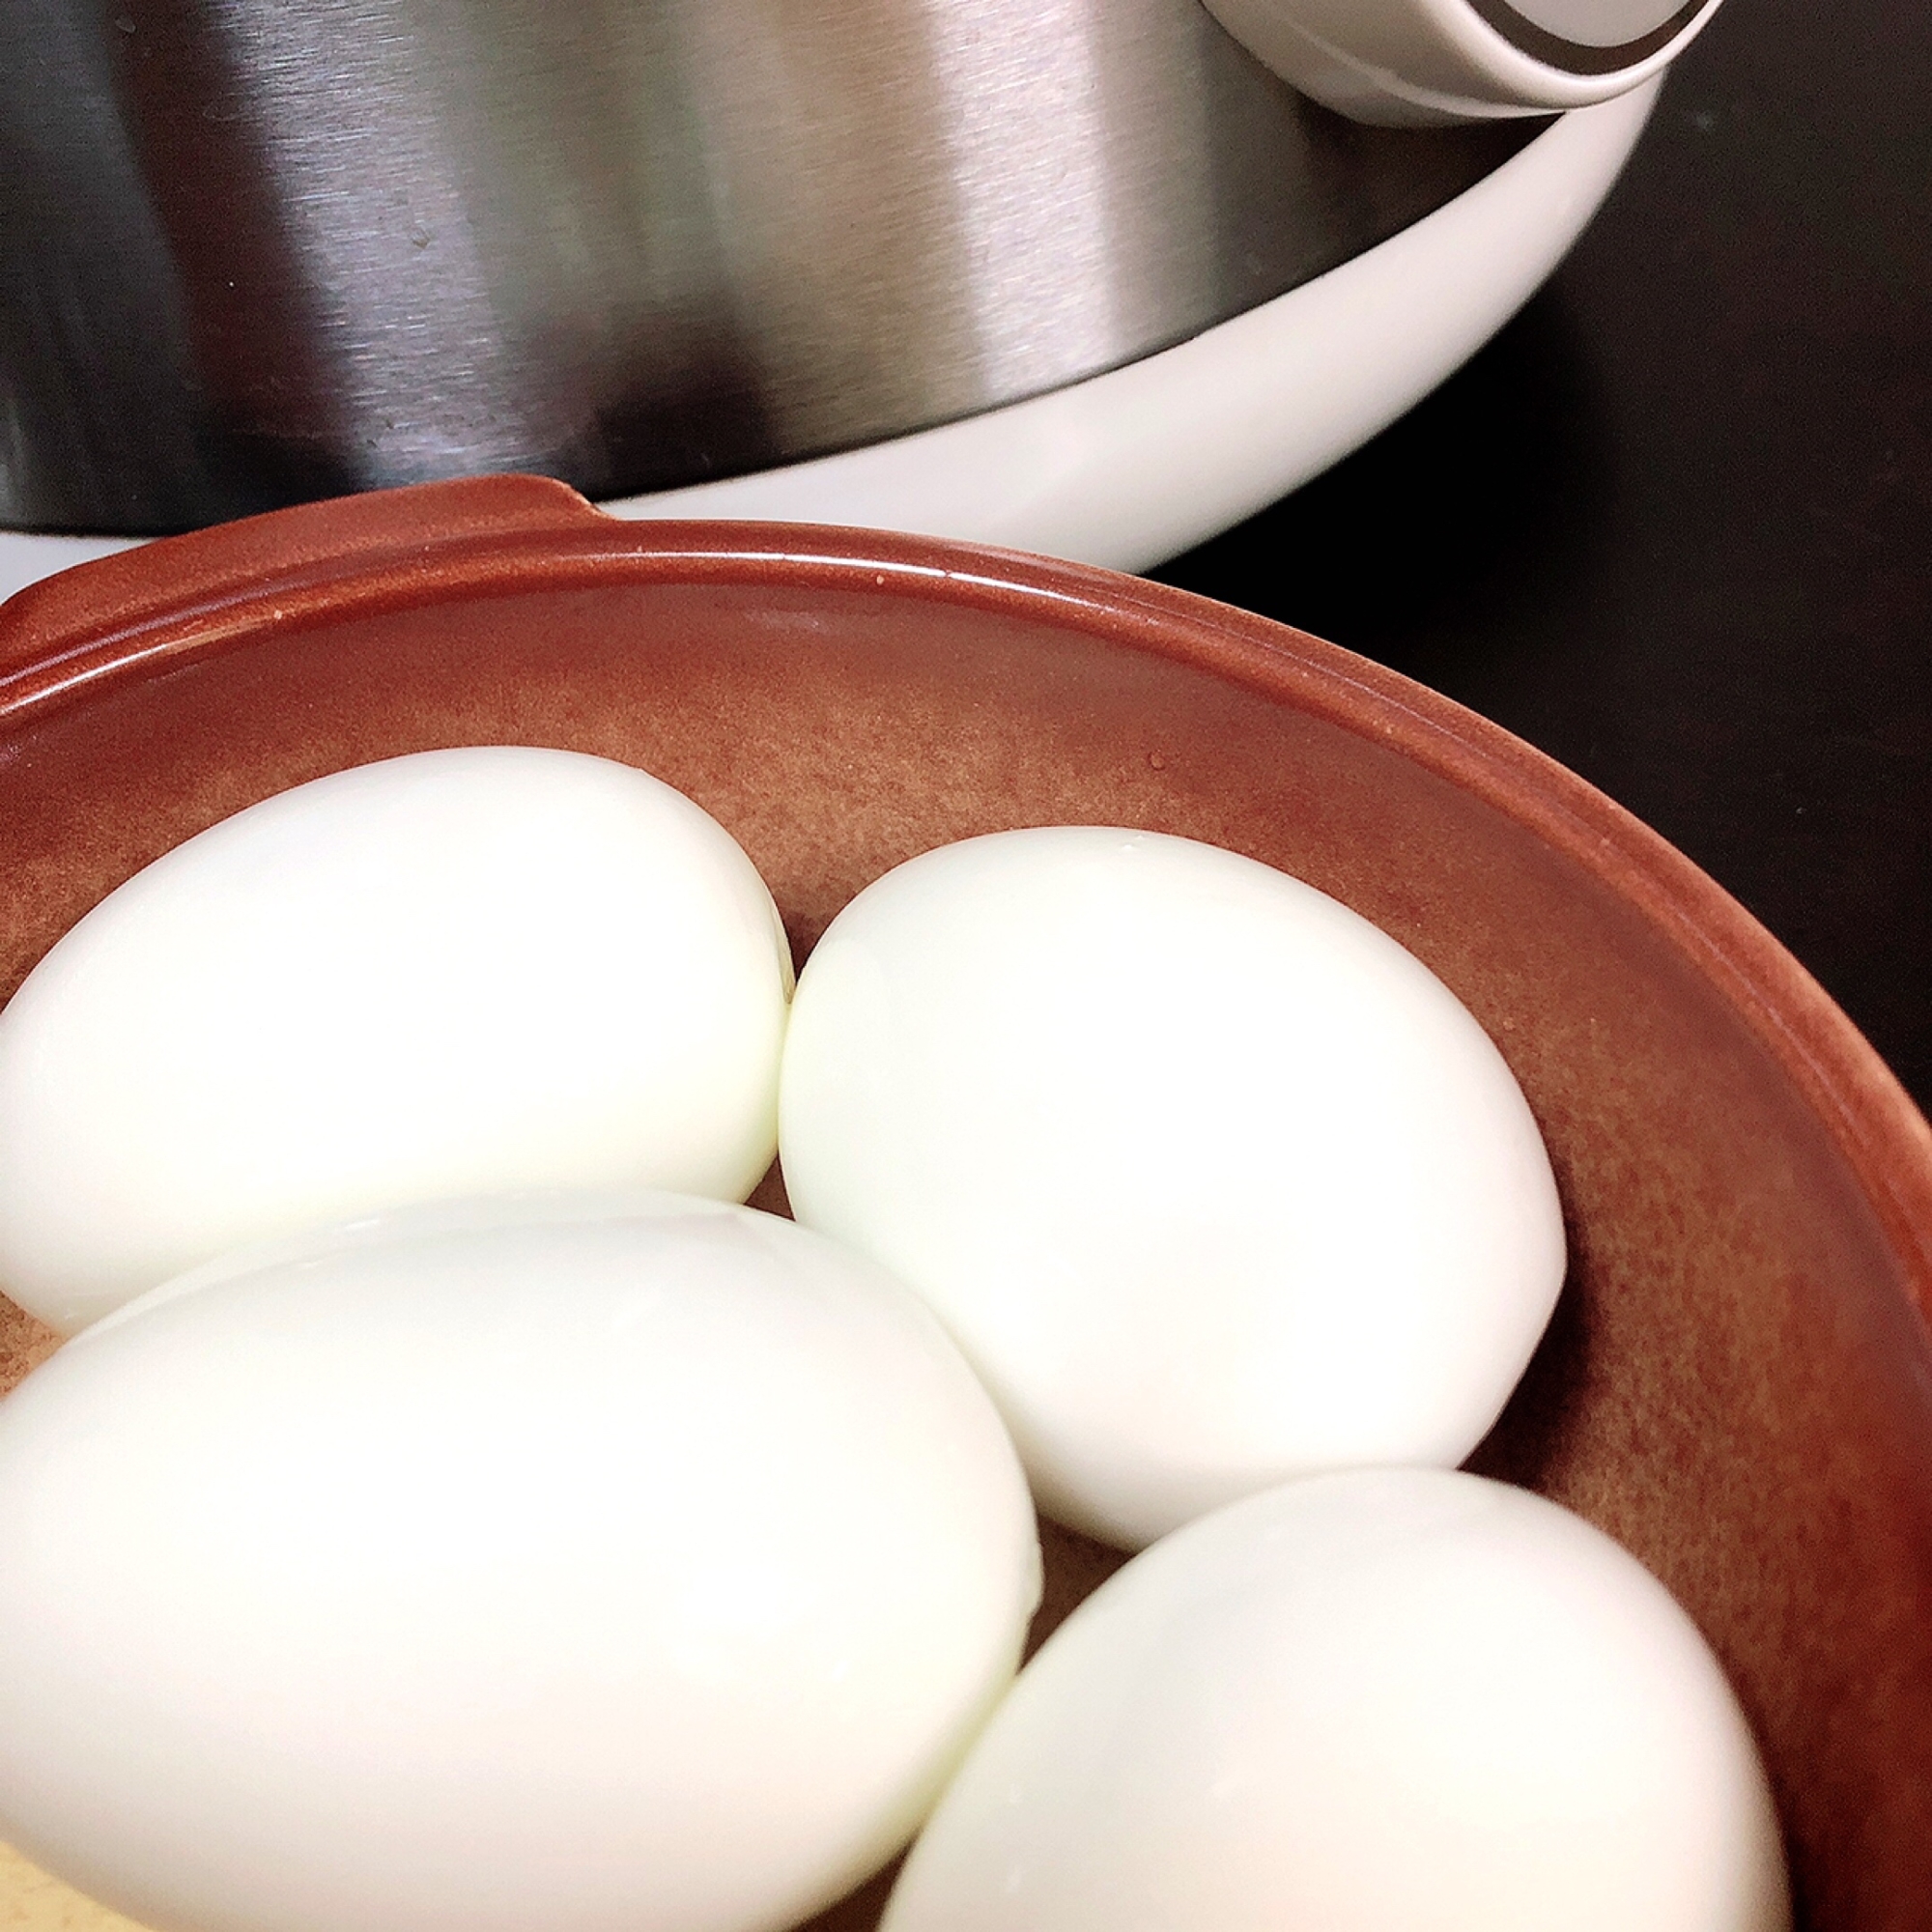 電気圧力鍋でゆで卵